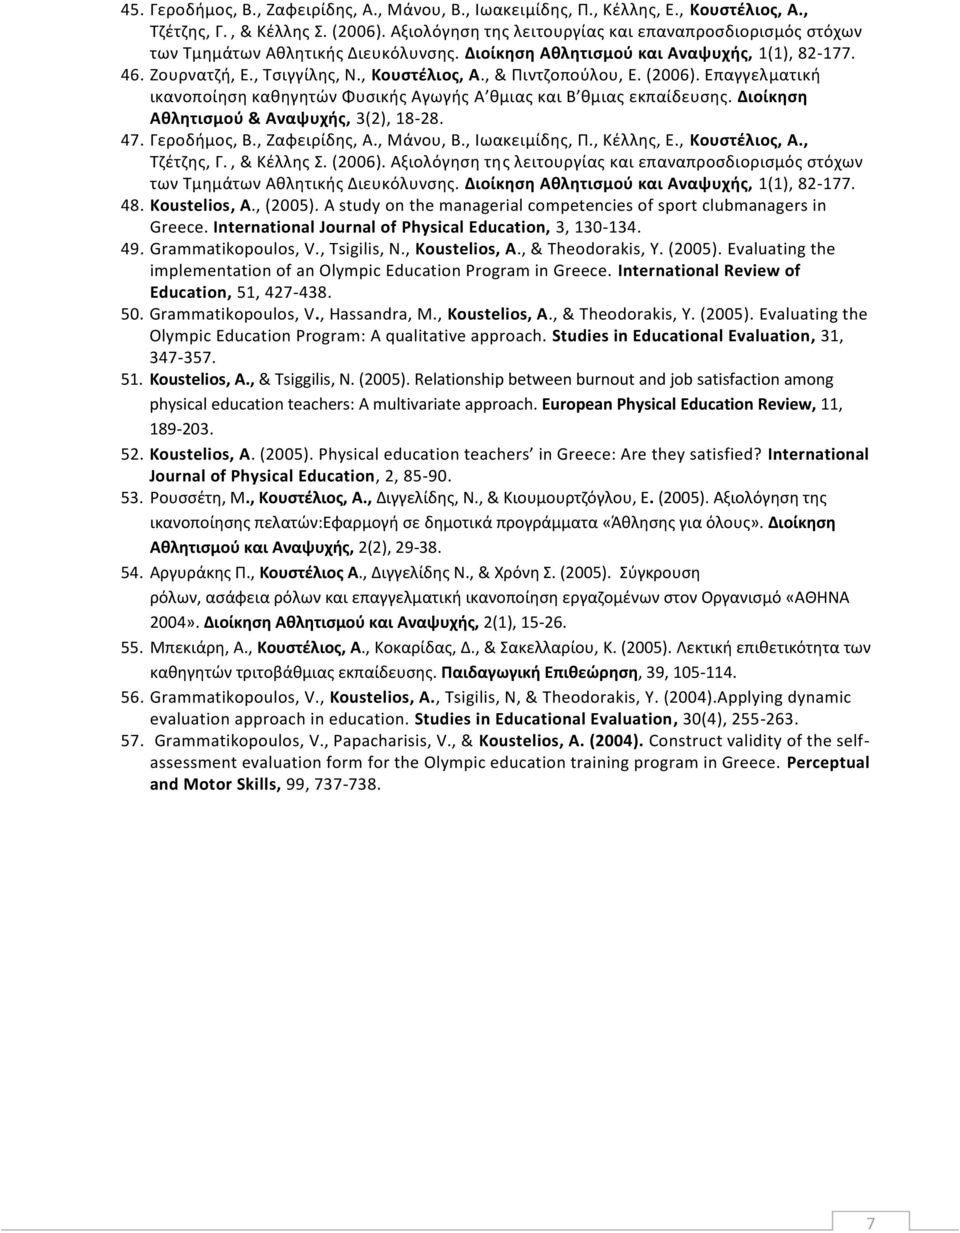 , & Πιντζοπούλου, Ε. (2006). Επαγγελ ματική ικανοποίηση καθηγητών Φυσικής Αγωγής A θμιας και Β θμιας εκπαίδευσης. Διοίκηση Αθλητισμού & Αναψυχής, 3(2), 18-28. 47. Γεροδήμος, Β., Ζαφειρίδης, Α.